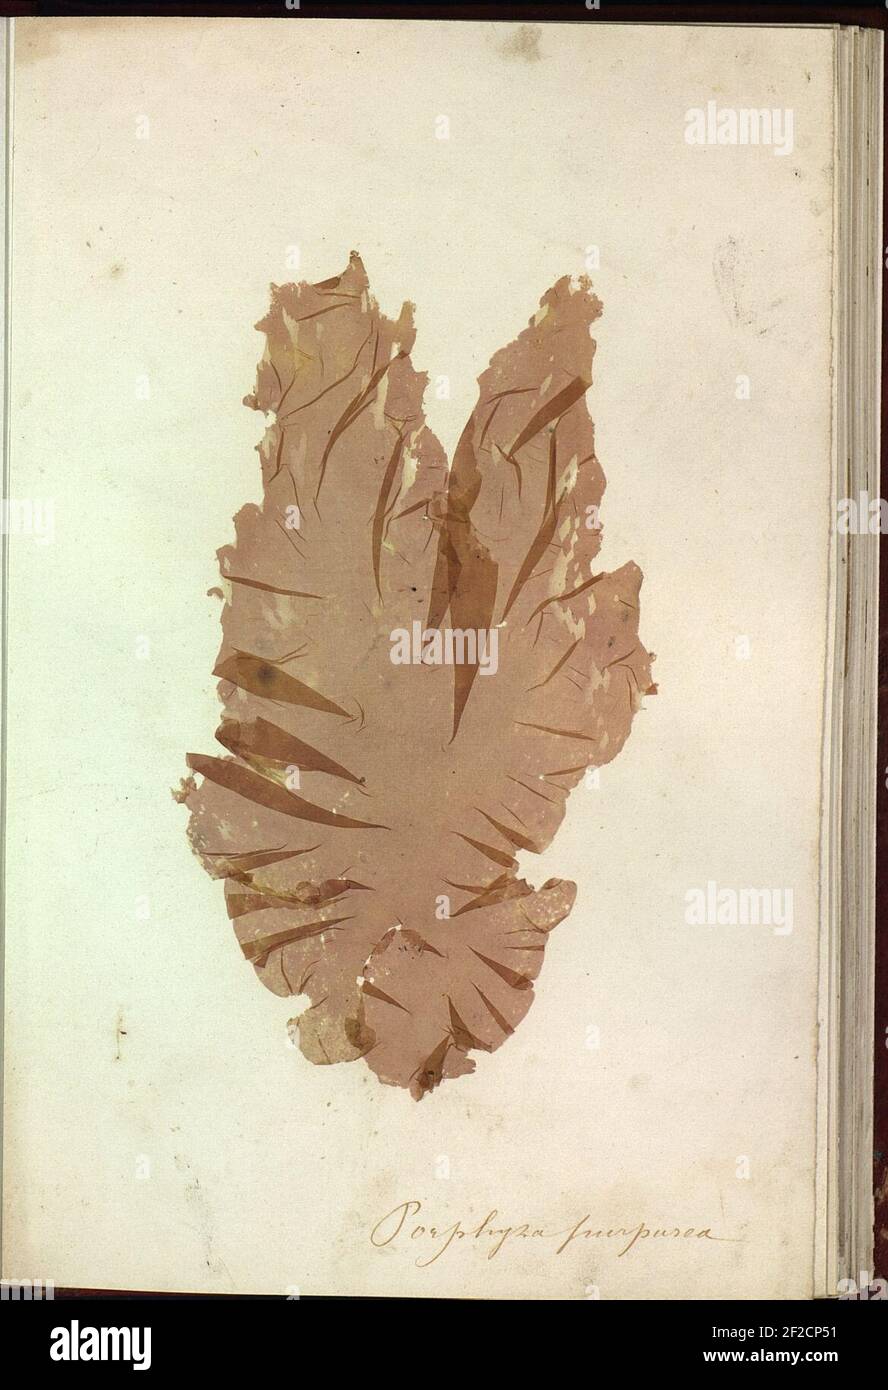 Porphyra purpurea Brest Album de plantes marines. Stock Photo